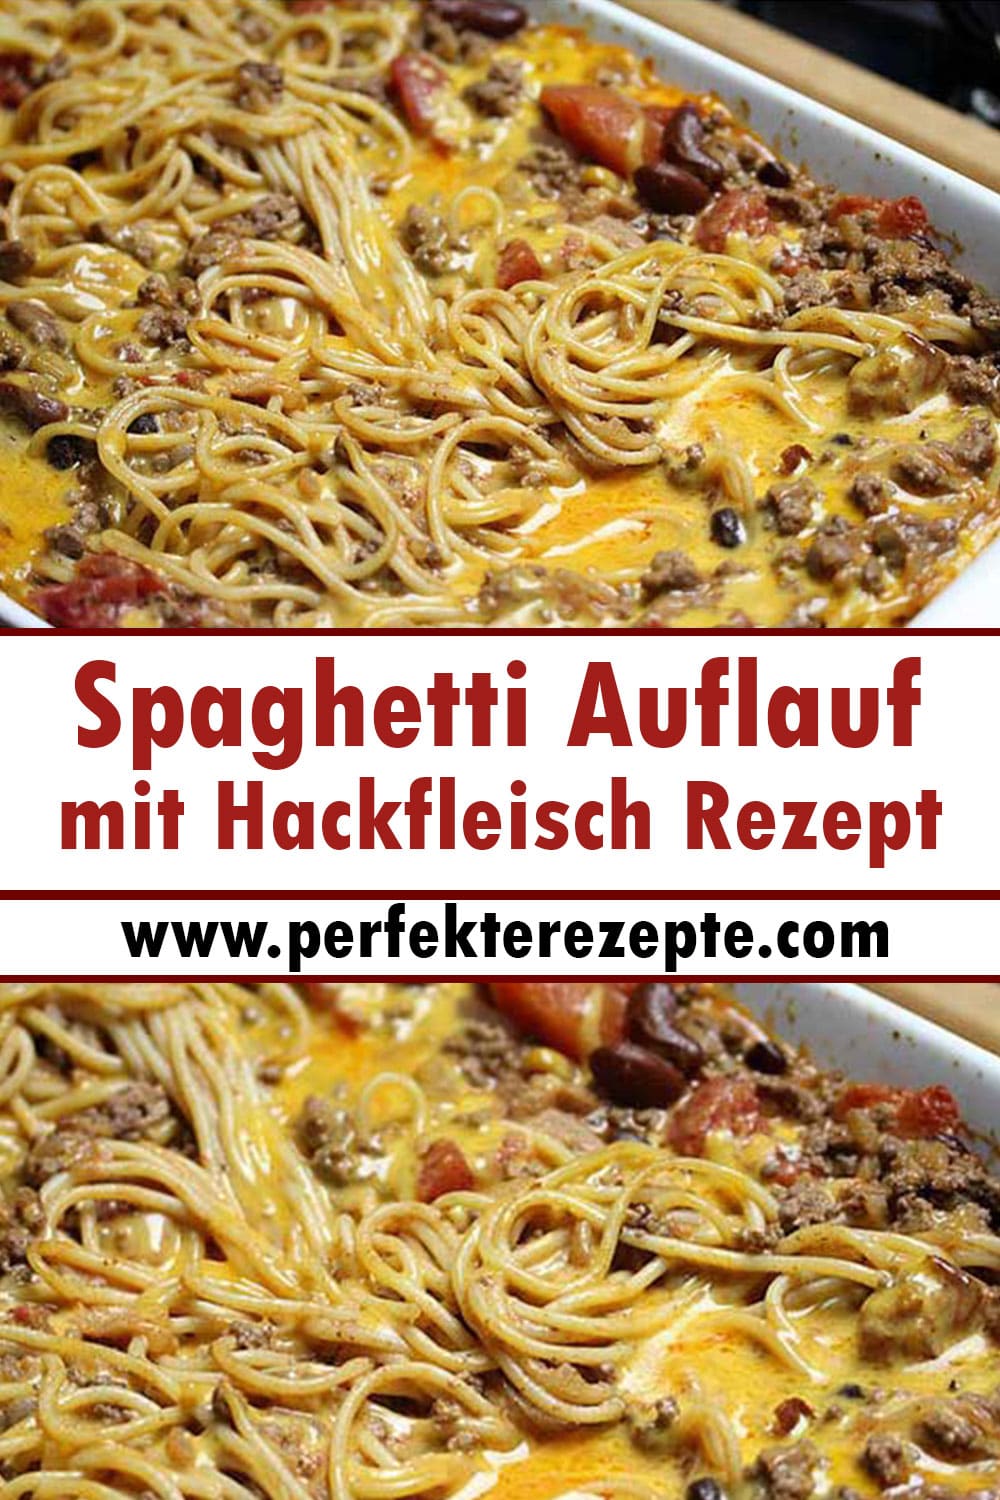 Spaghetti Auflauf mit Hackfleisch Rezept